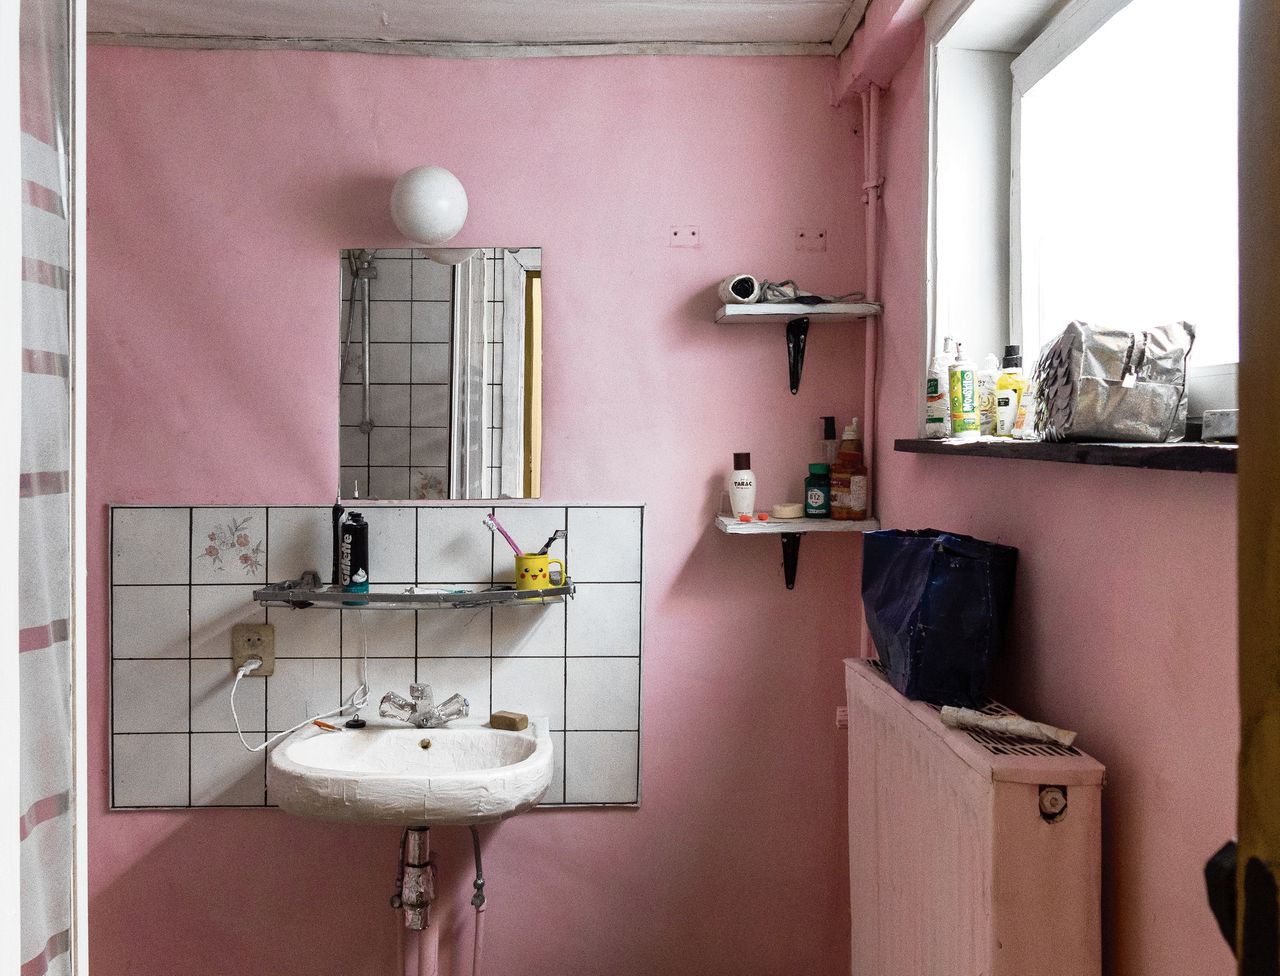 Stijn ter Braak, My bathroom (2021), detail.